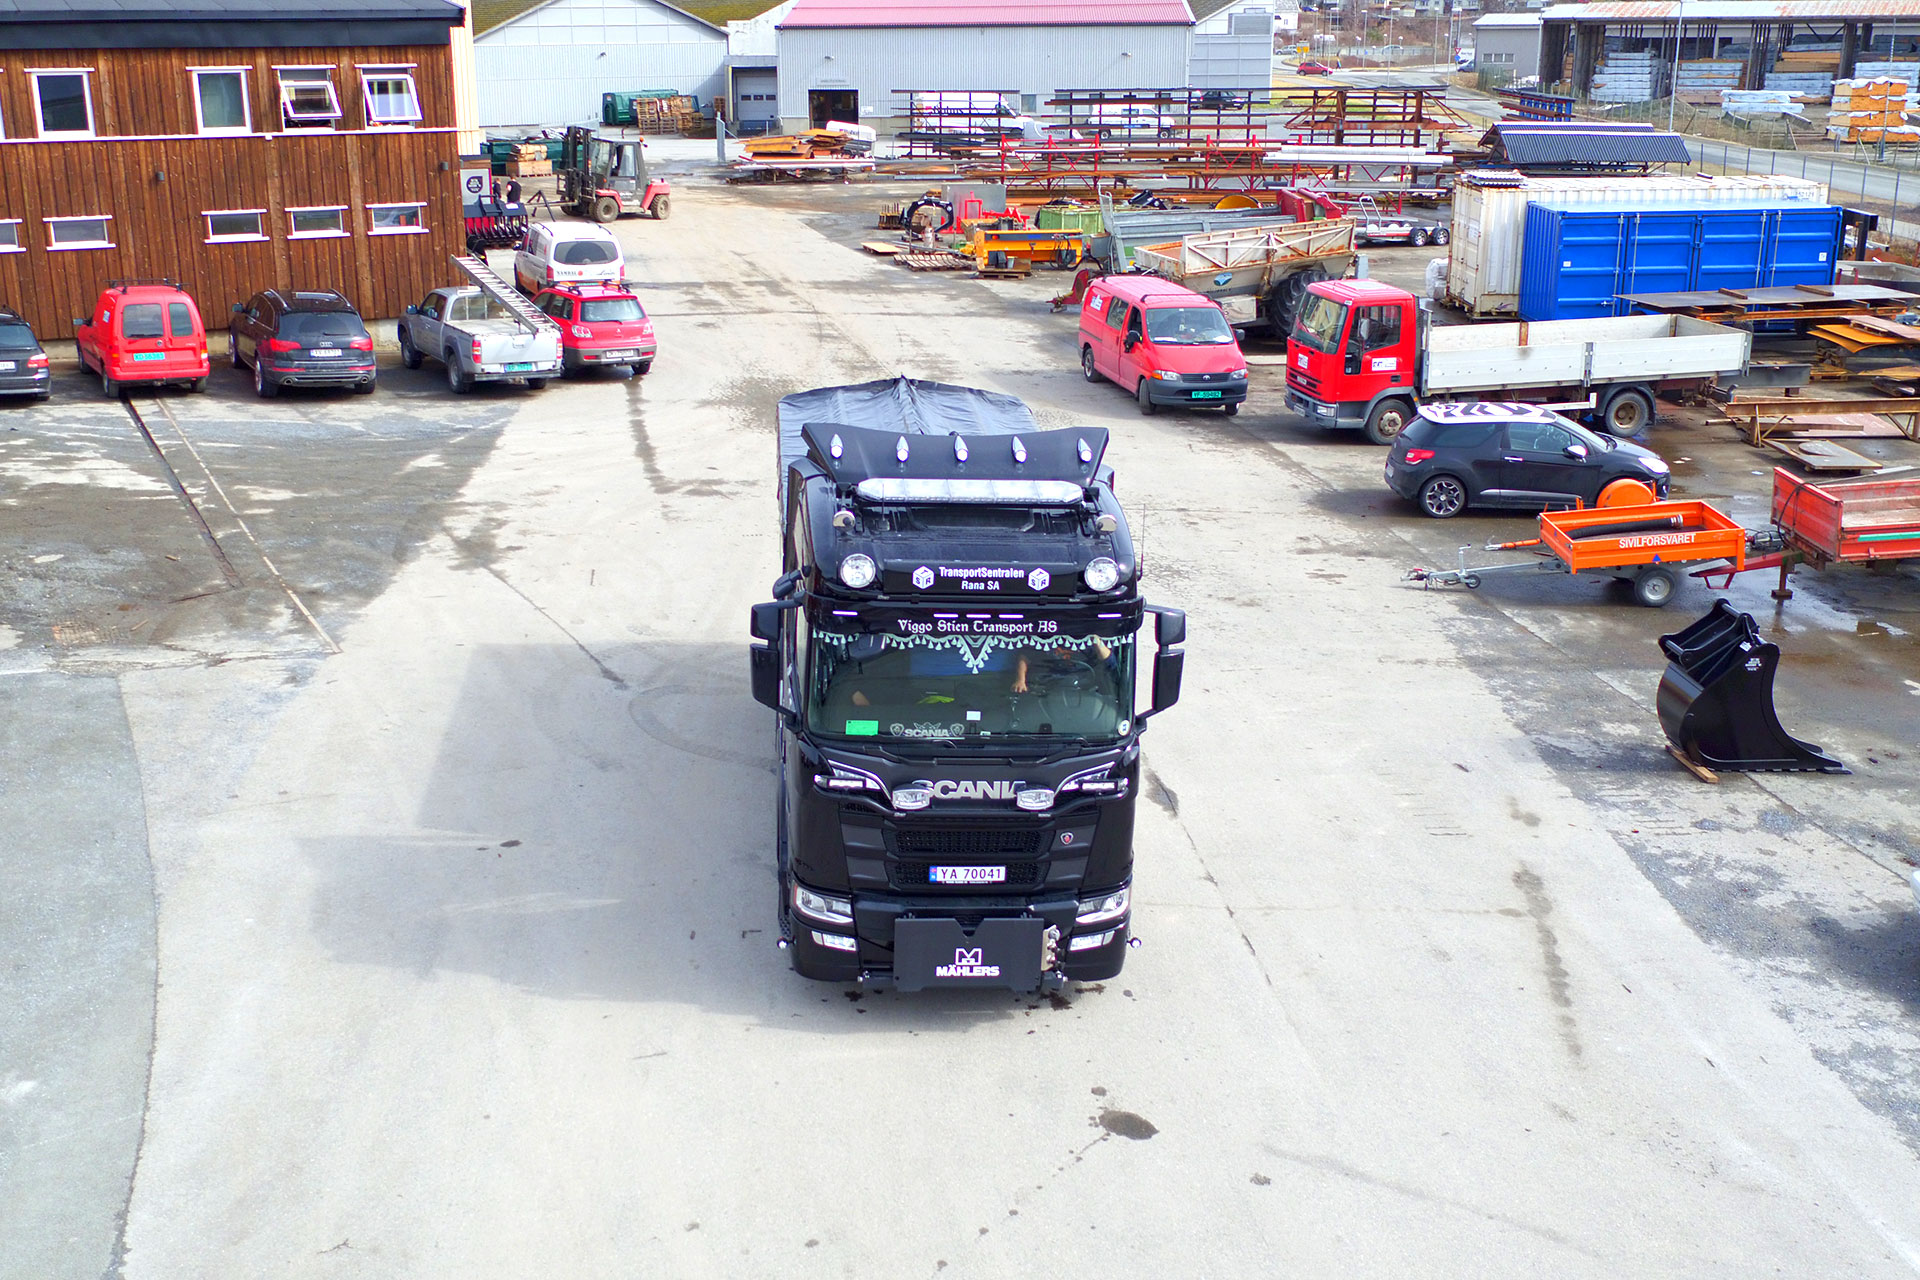 En smilende eier av VIGGO STIEN TRANSPORT AS, fra Bjerka, hentet sin nye svart-speilblanke Asfaltbalje i Hardox 450 Stål med sin nye Scania